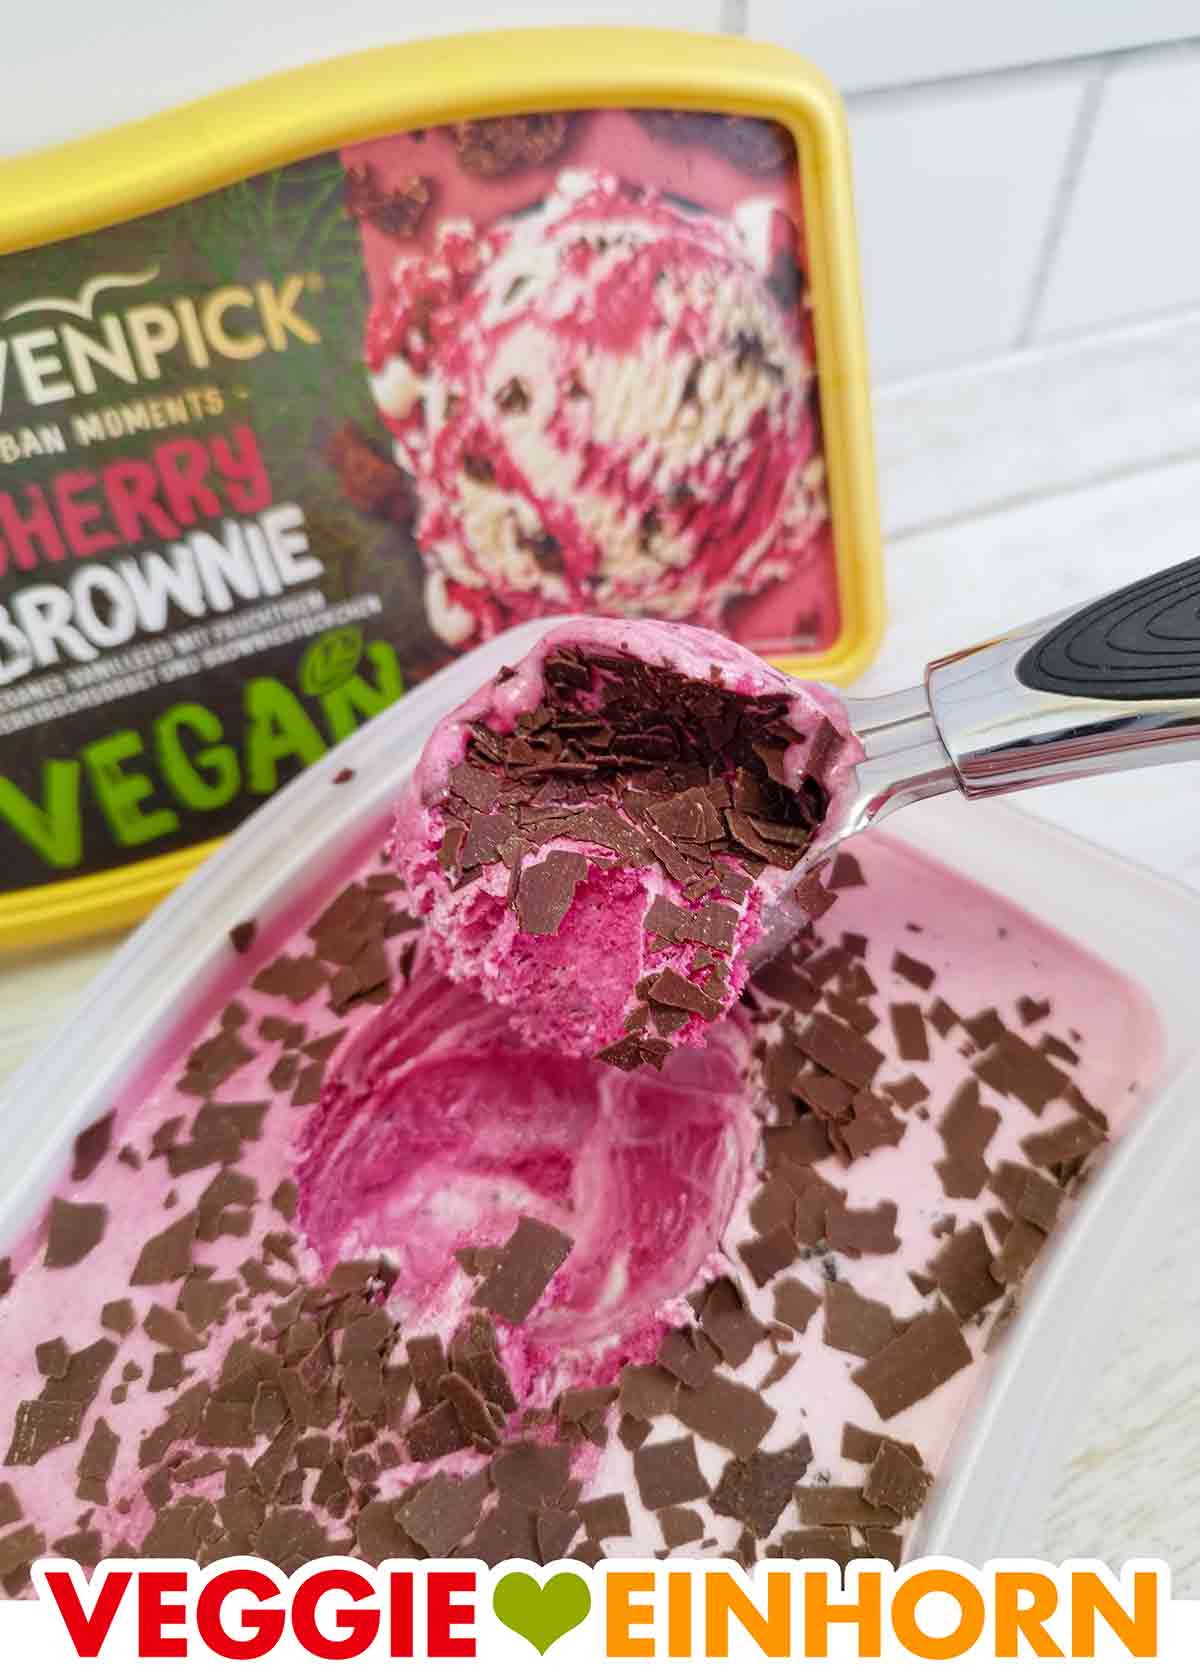 Eiskugelportionierer mit veganer Cherry Brownie Eiscreme von Mövenpick